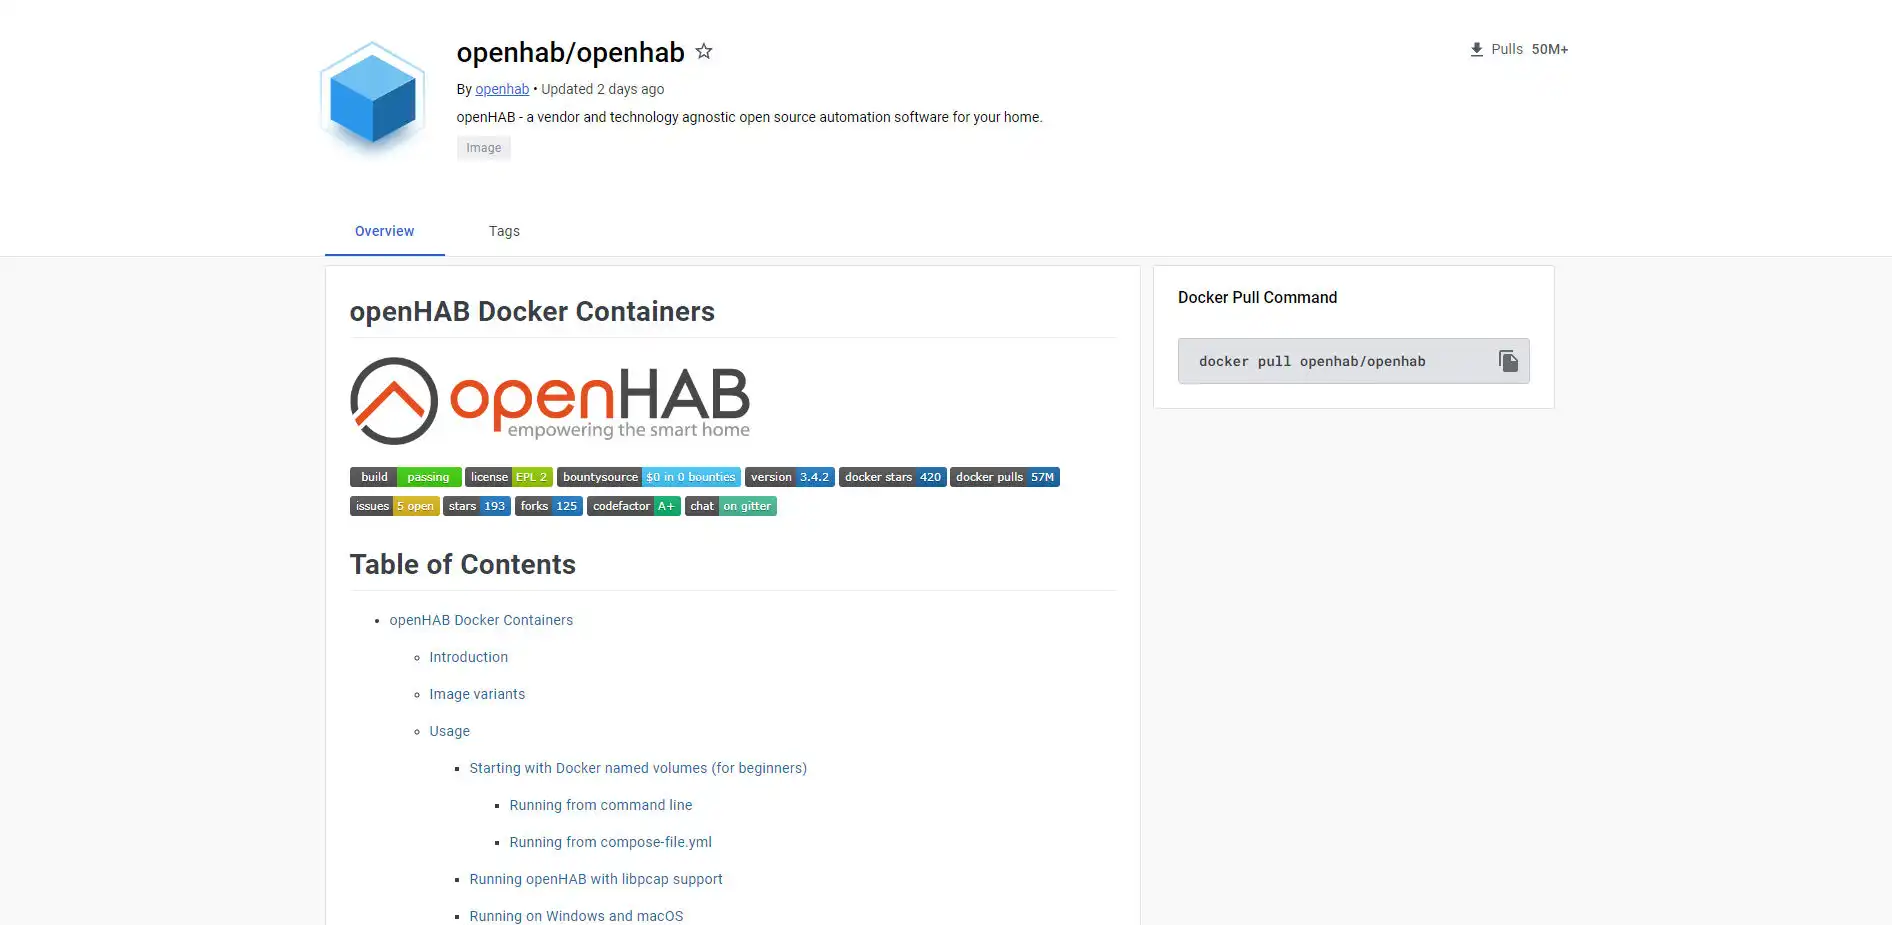 OpenHAB 4 - Testiamo la nuova versione 4 con Docker - Home Automation System